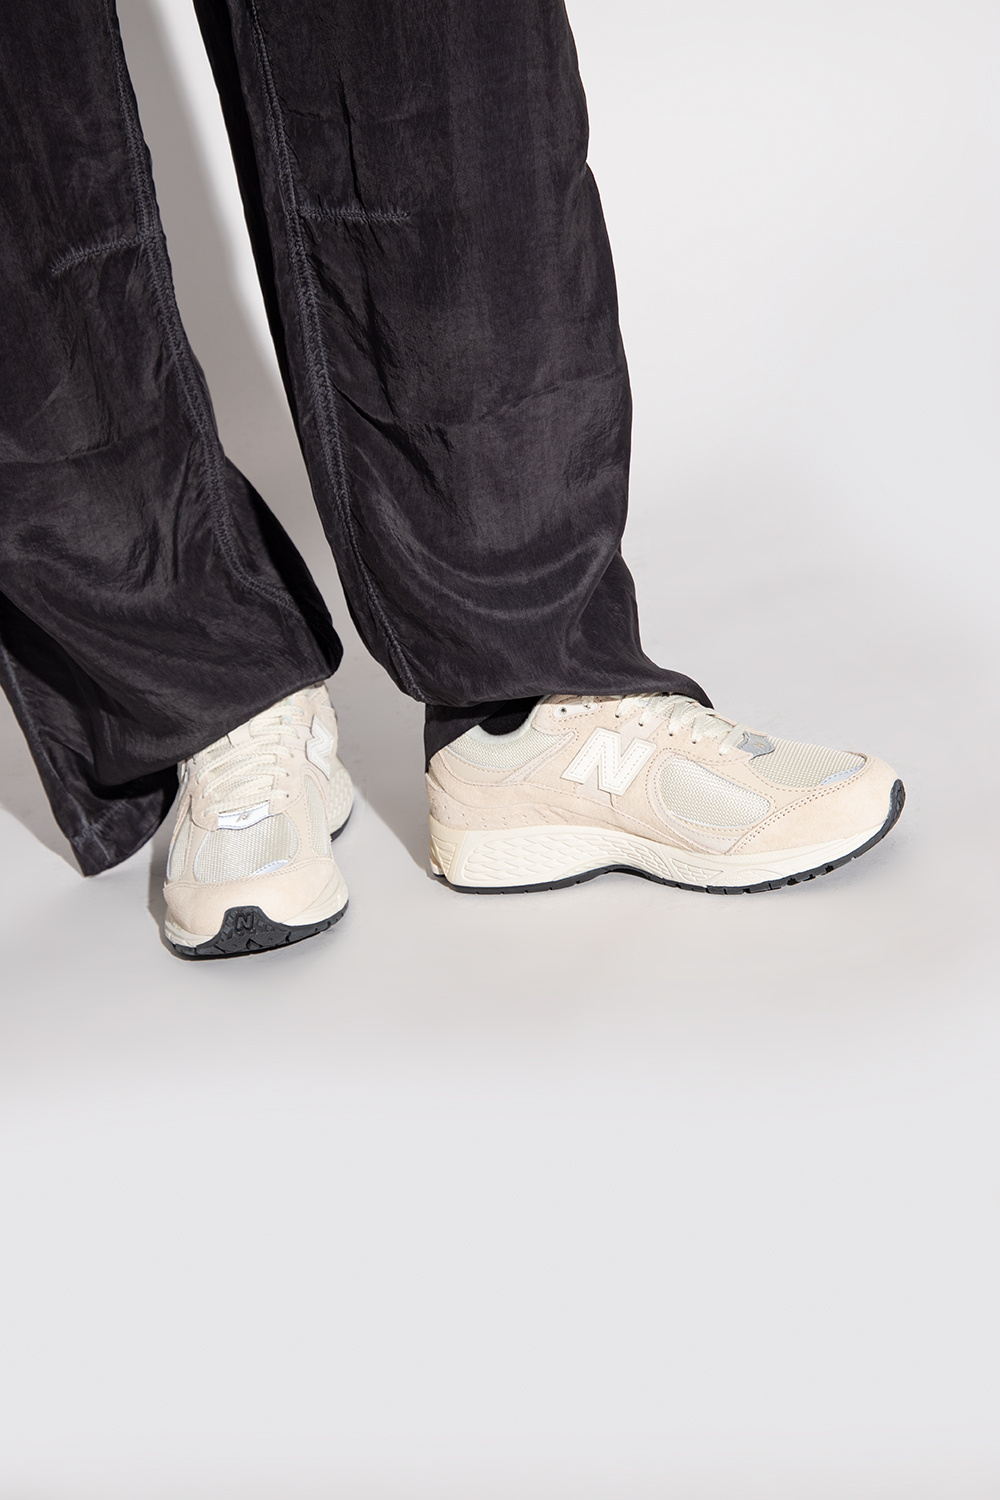 New Balance 'M2002RCC' sneakers | Women's Shoes | Vitkac